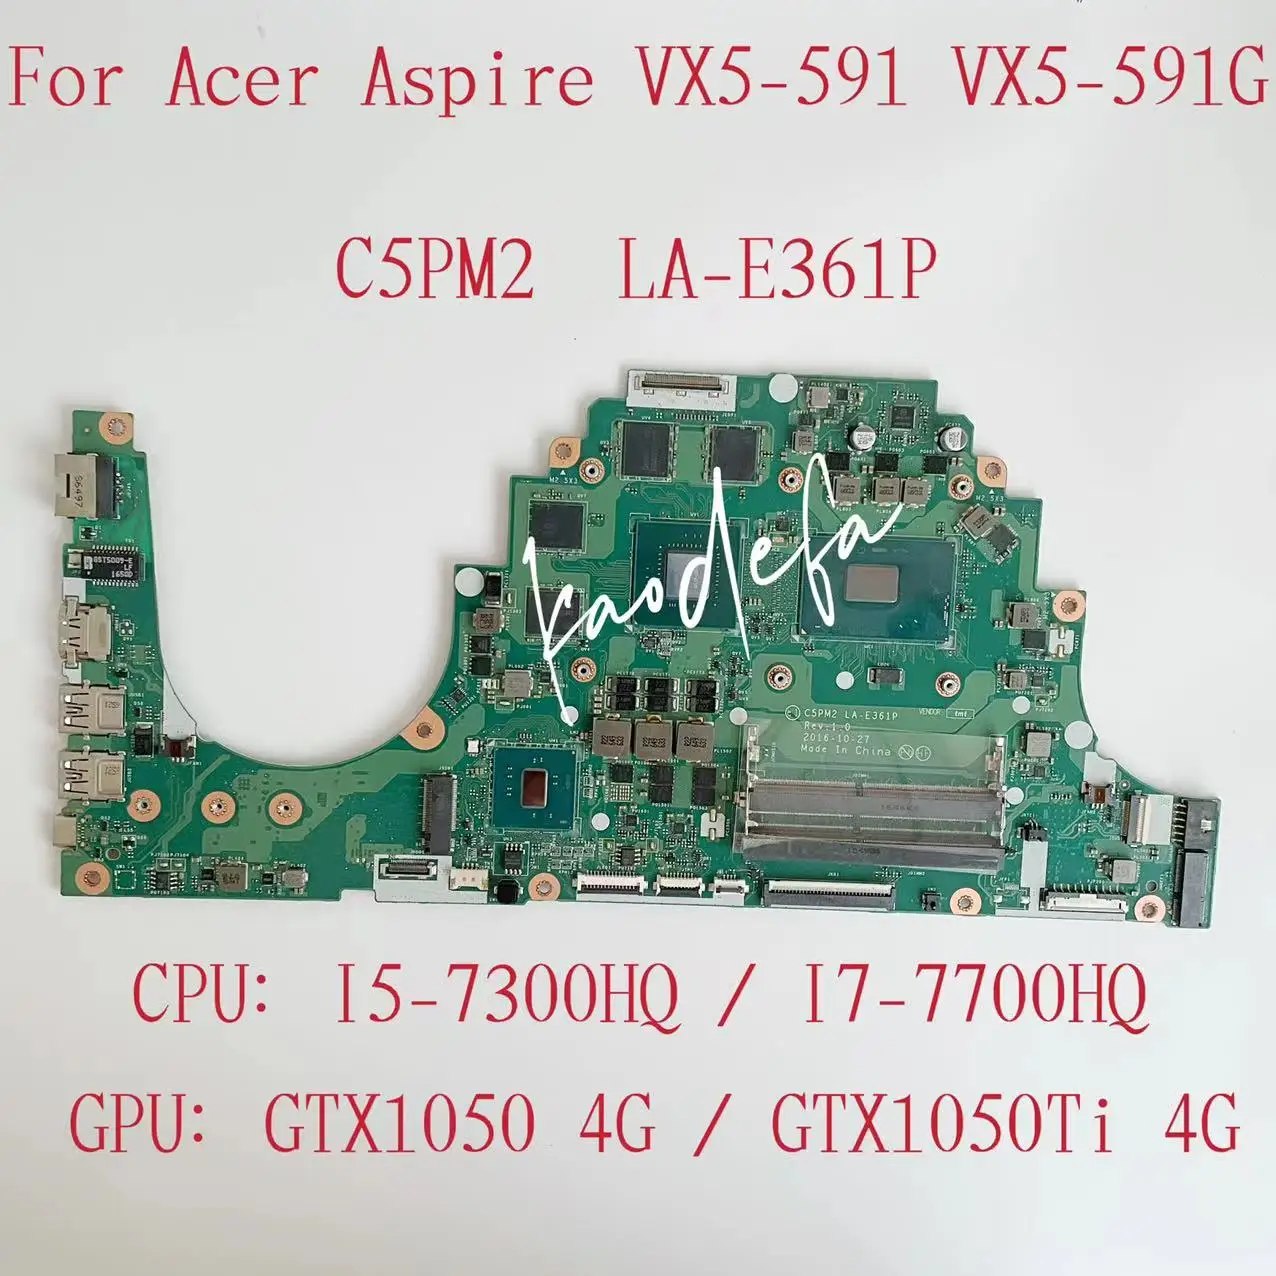 C5PM2 LA-E361P Mainboard لـ Acer Aspire VX5-591 CPU اللوحة الأم المحمول CPU I5-7300HQ / I7-7700HQ GPU: GTX1050 / 1050TI 4G TEST OK